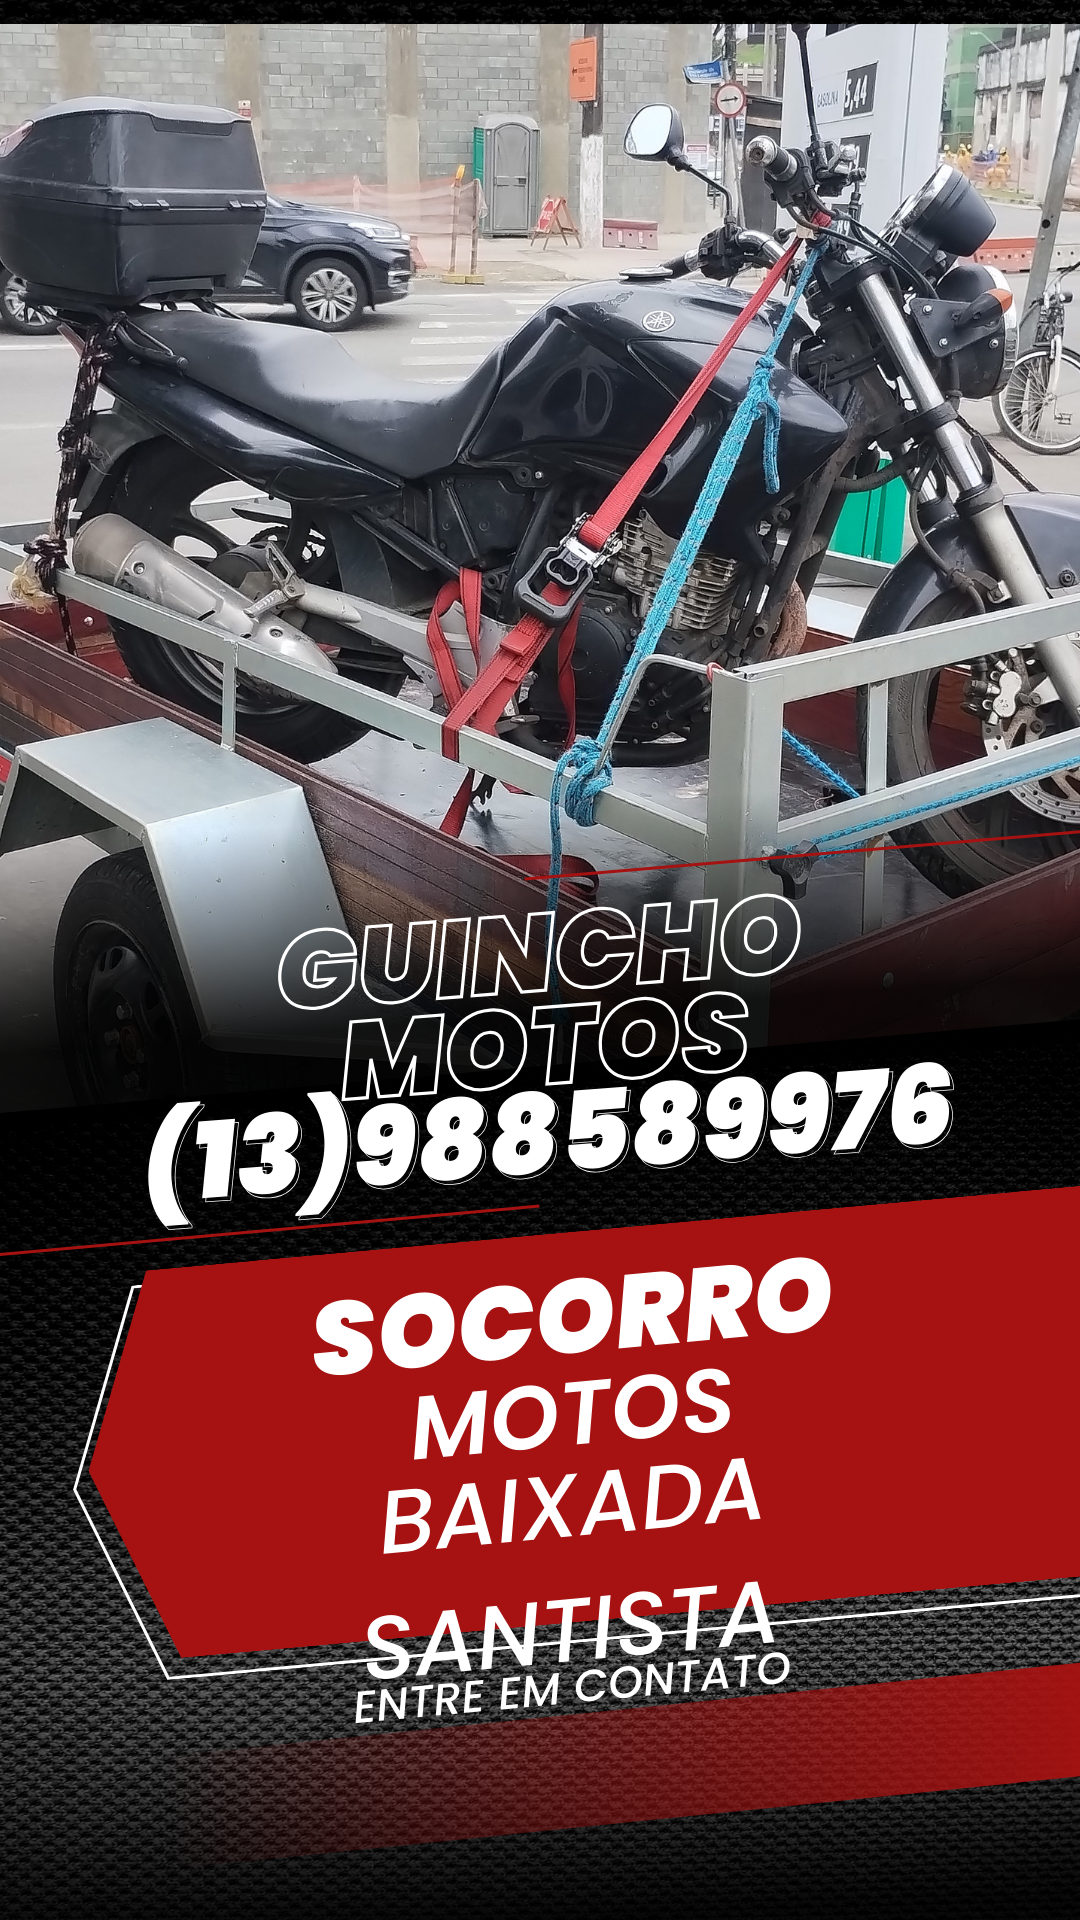 Guincho Tude Bastos (13) 988589976 - Guincho em Santos (13